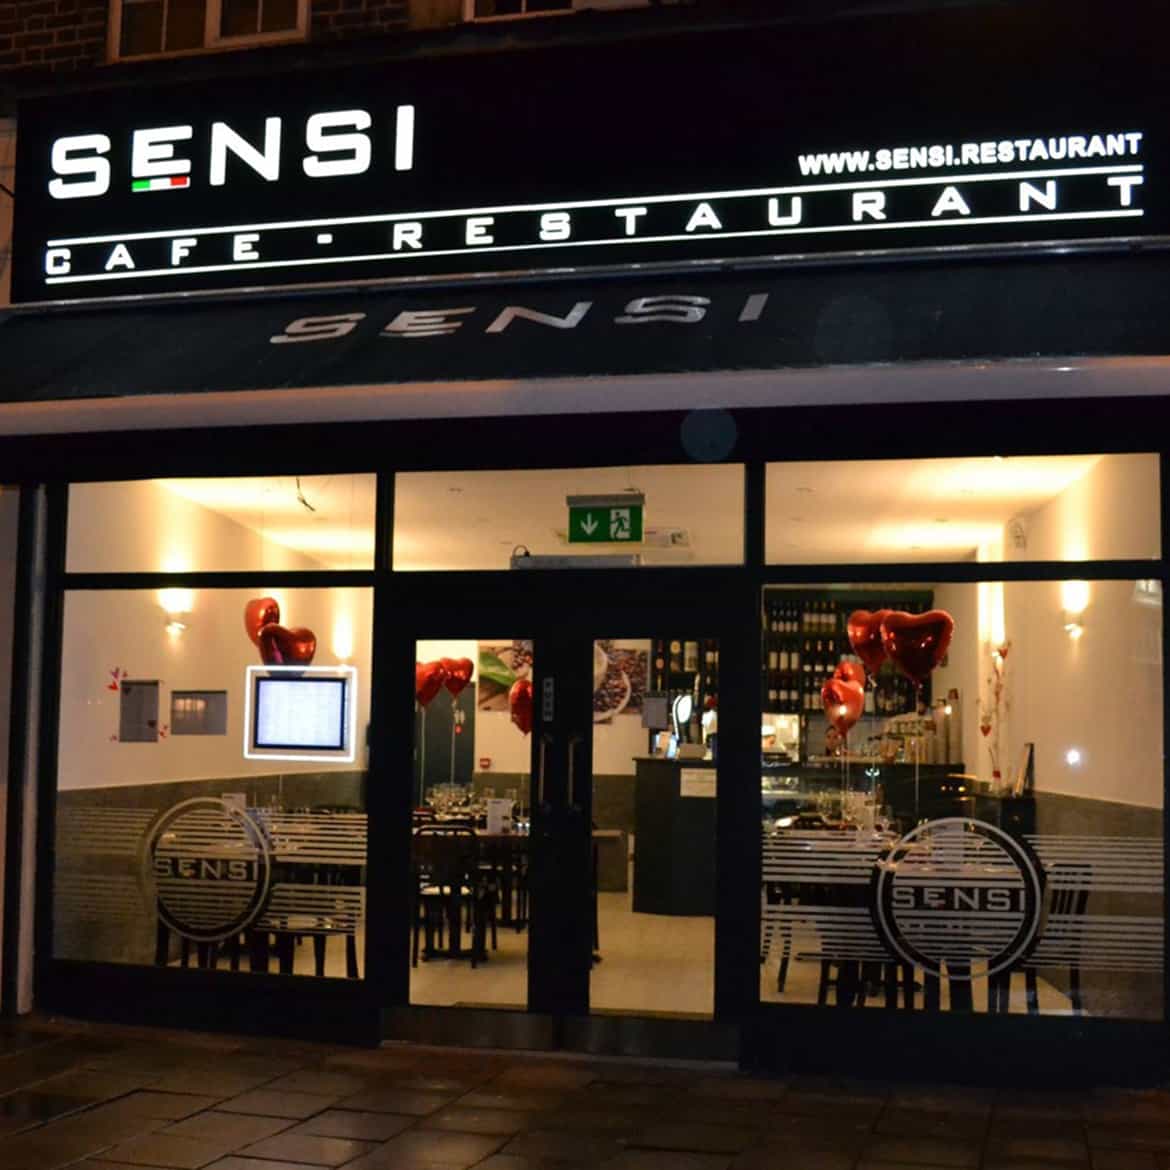 Sensi Restaurant - Front Shop Sign